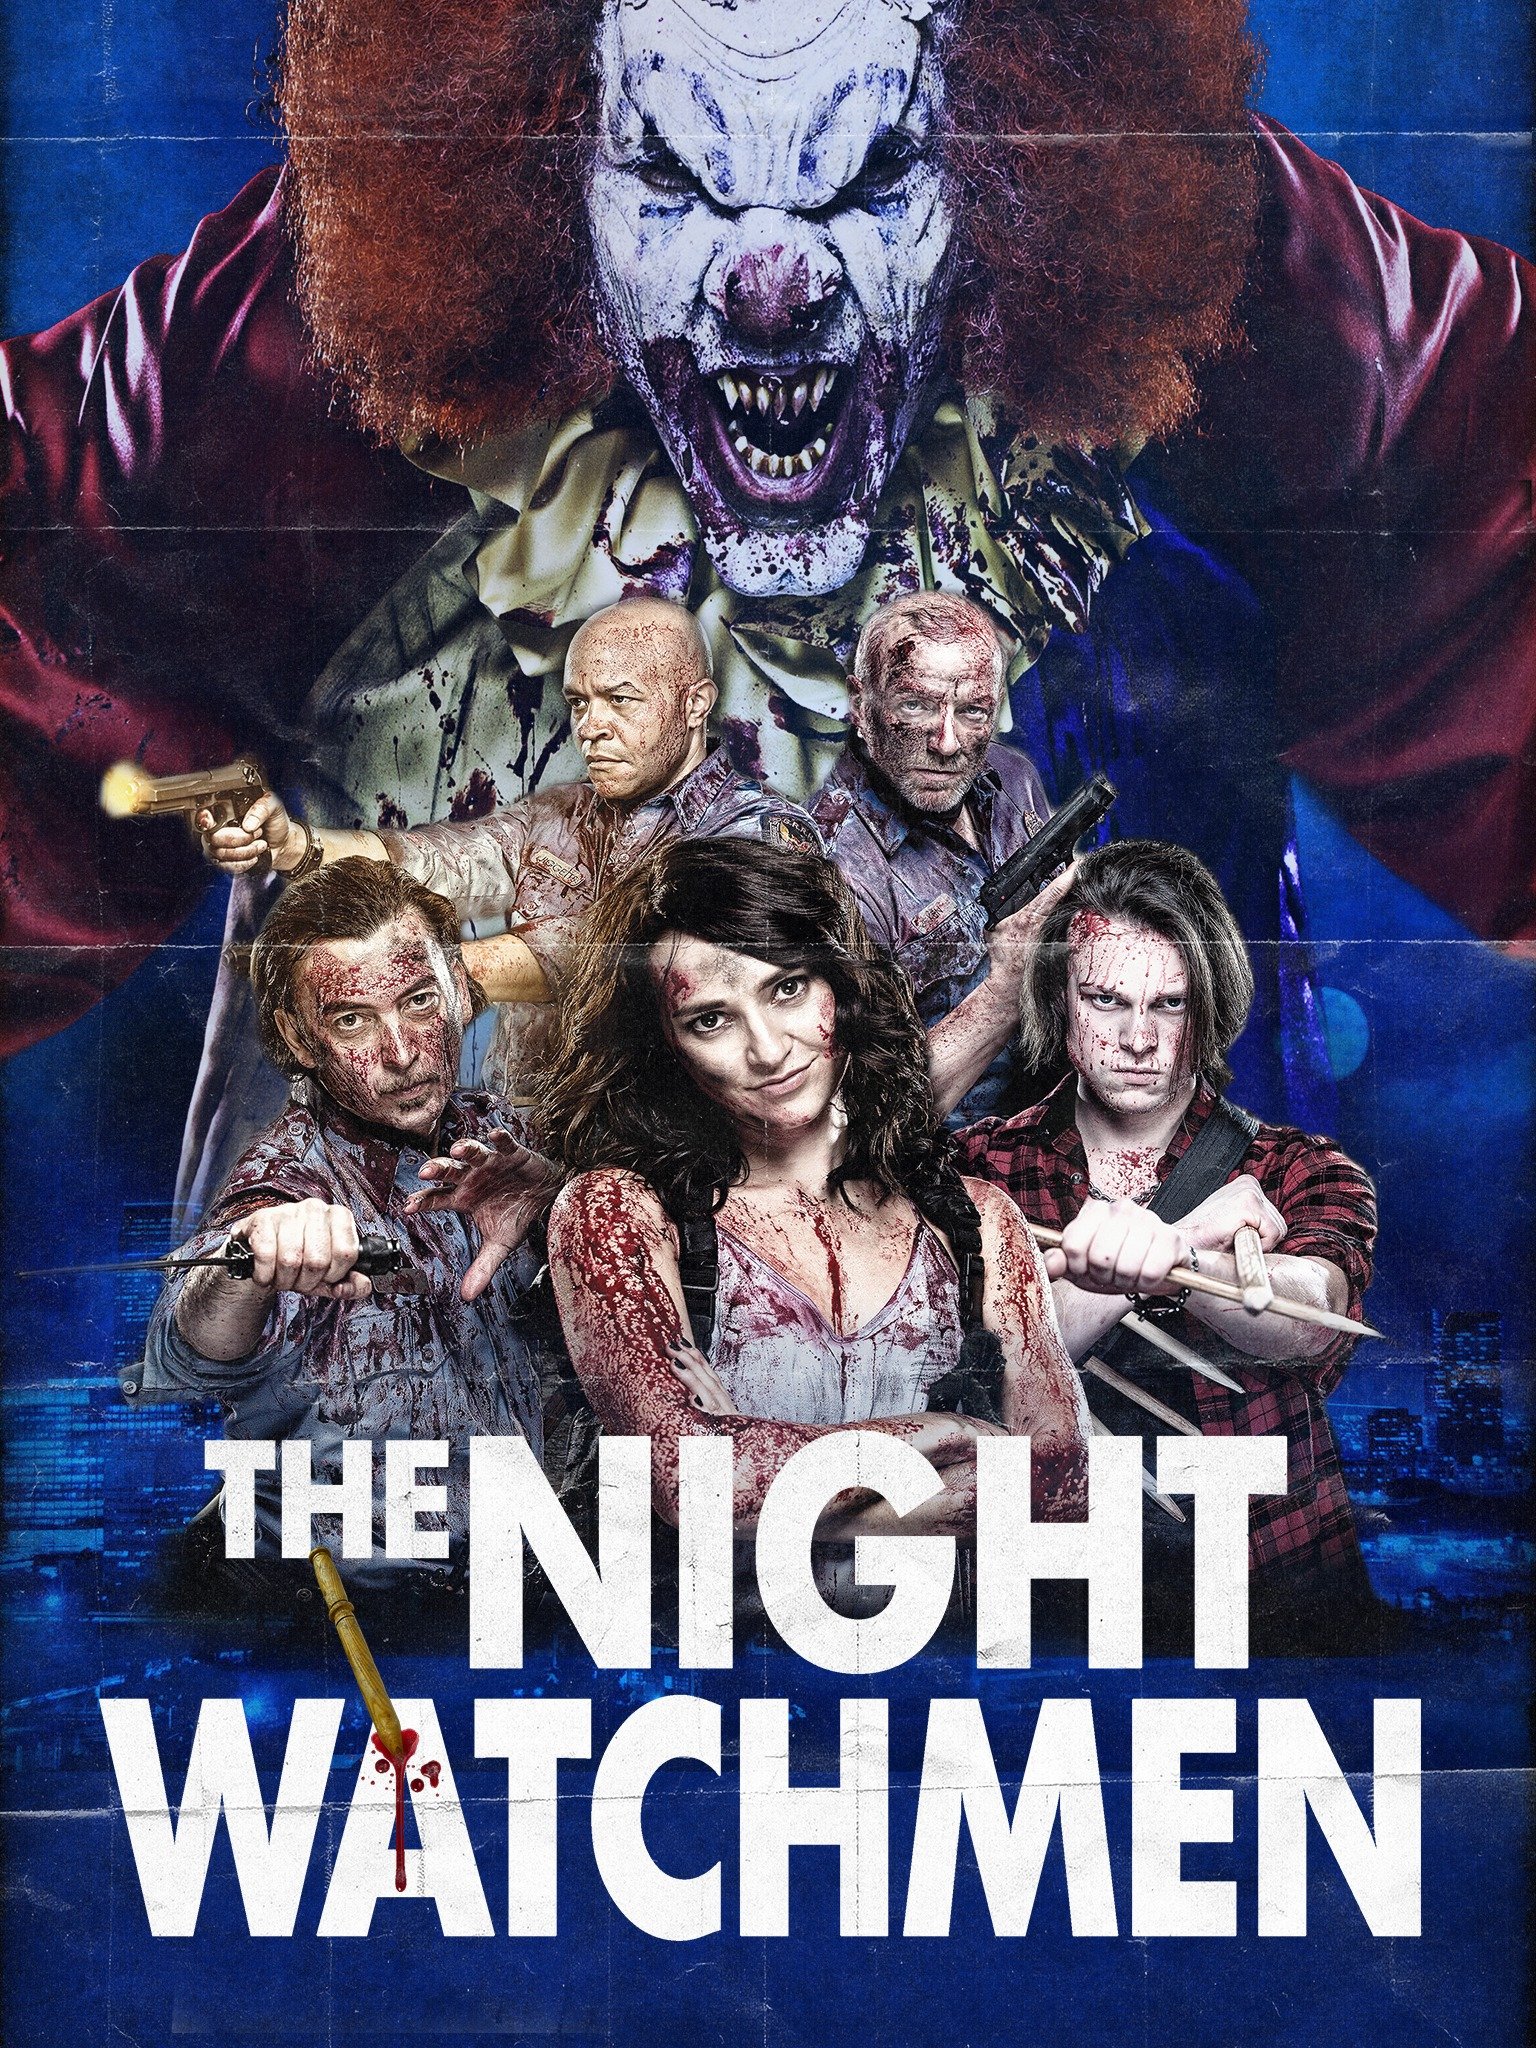 the night watchmen movie reviews